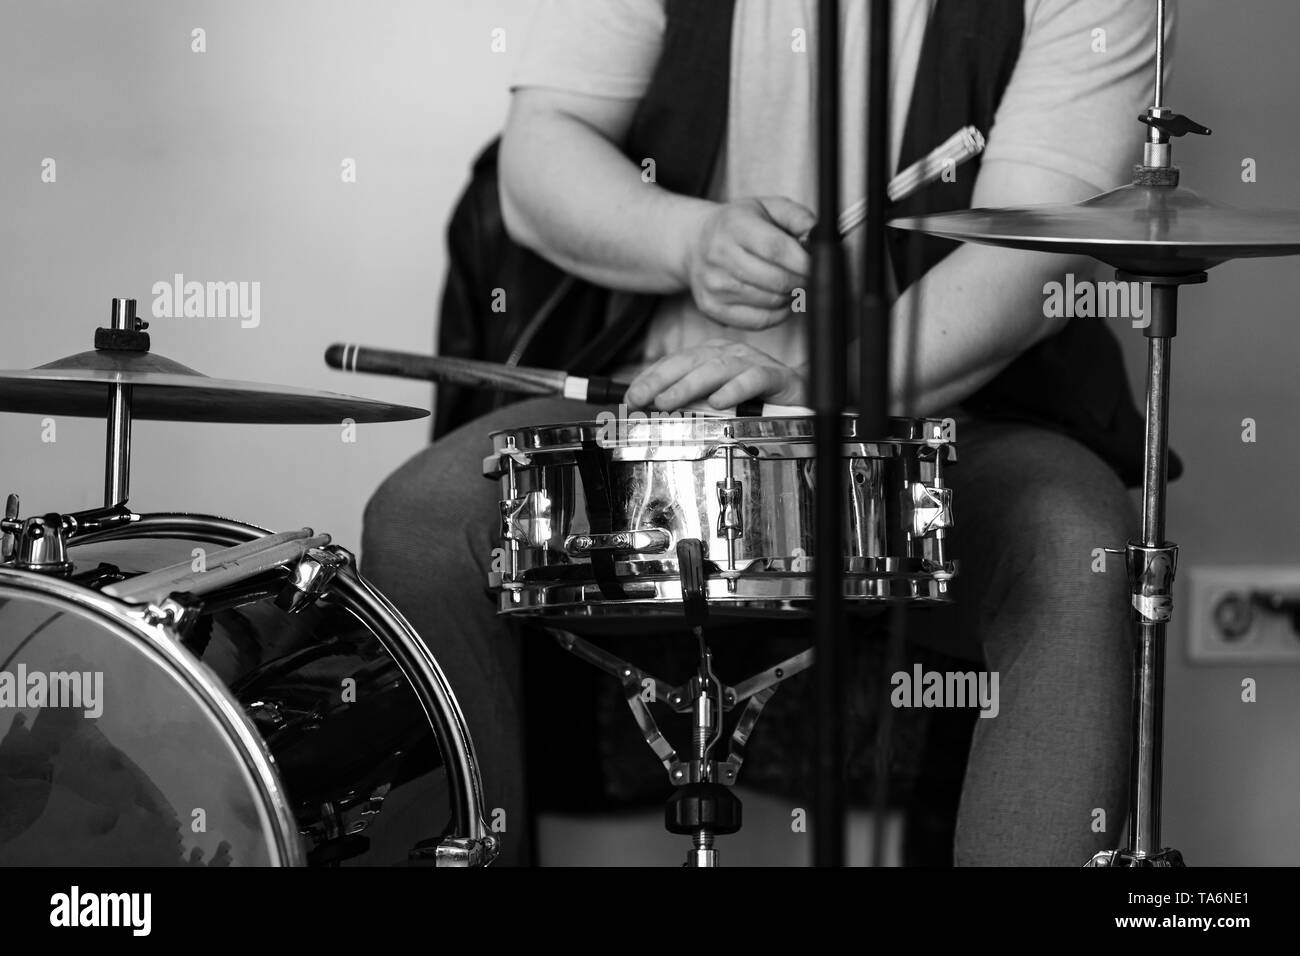 Noir et blanc en arrière-plan de la musique live, le batteur joue avec les baguettes d'un ensemble de batterie. Photo Gros Plan avec soft focus sélectif Banque D'Images